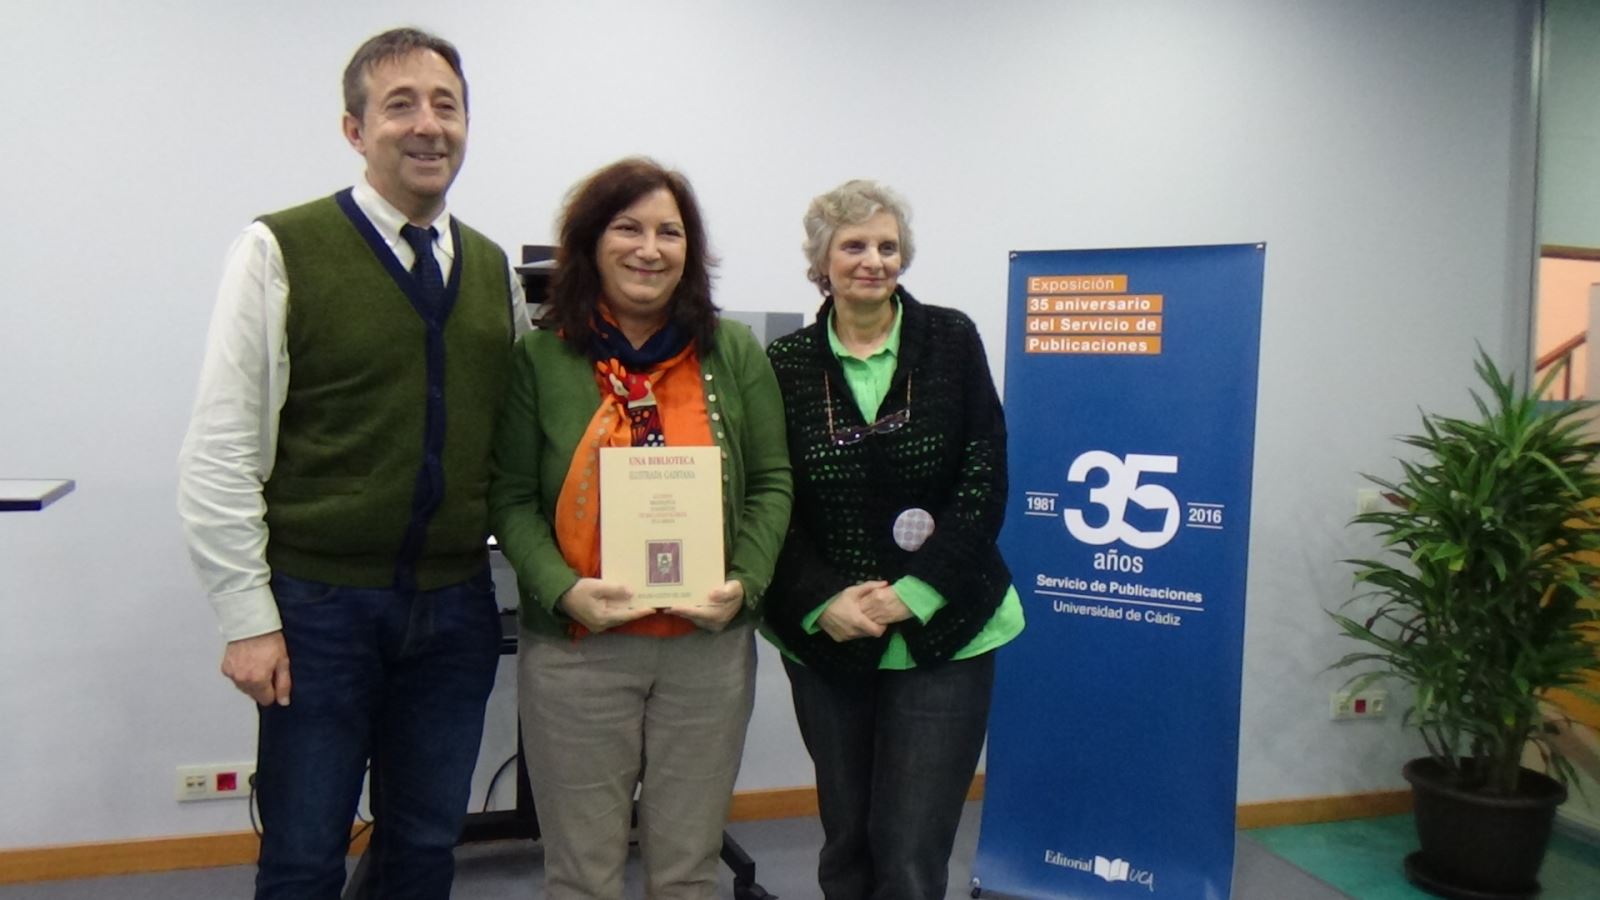 XXXV aniversario del Servicio de Publicaciones de la Universidad de Cádiz: presentación en la "Sala de los Libros" de un nuevo libro del sello editorial UCA.